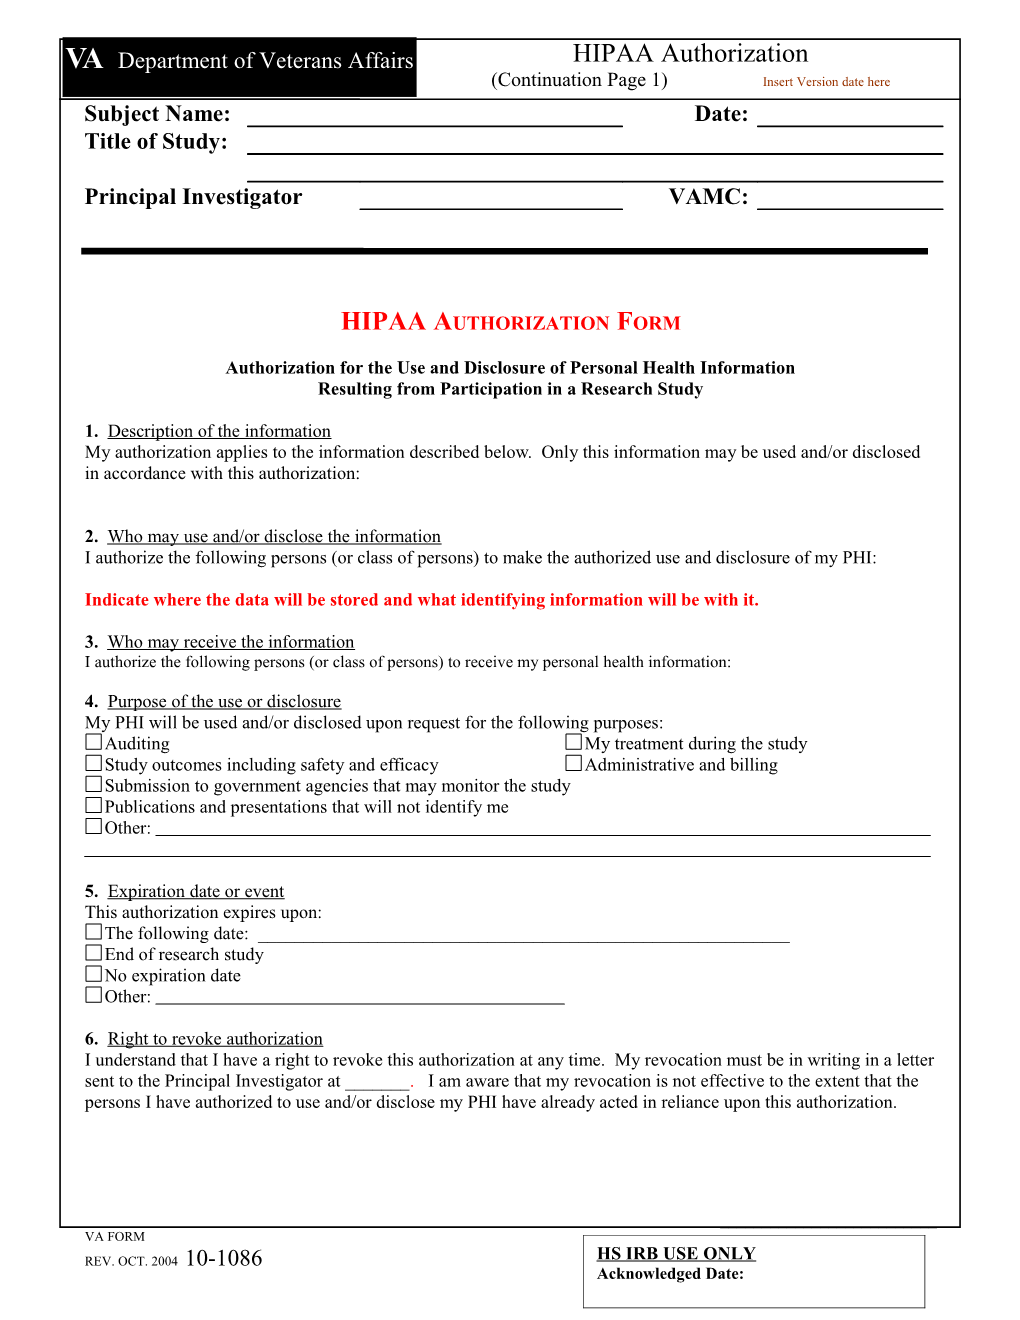 VA Research Consent Form 10-1086